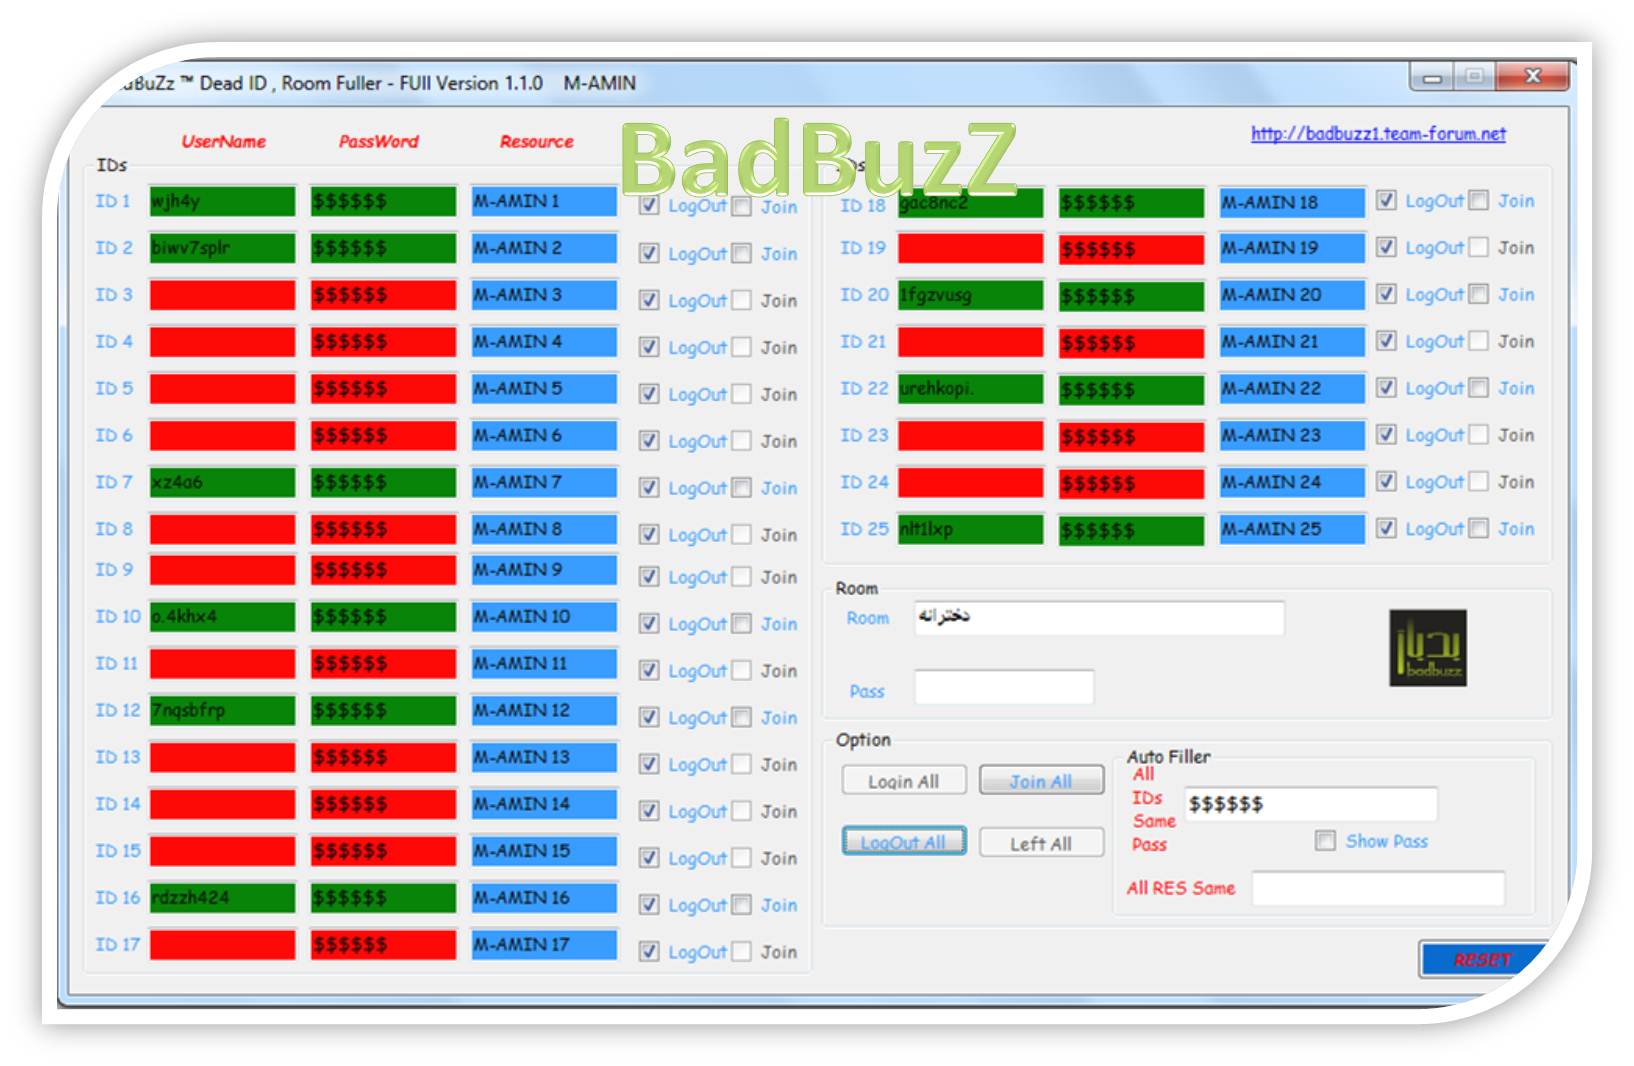   BadBuZz ™ Room Dead ID Fuller -Version 1.0.0 and version 1.1.0 Sad2